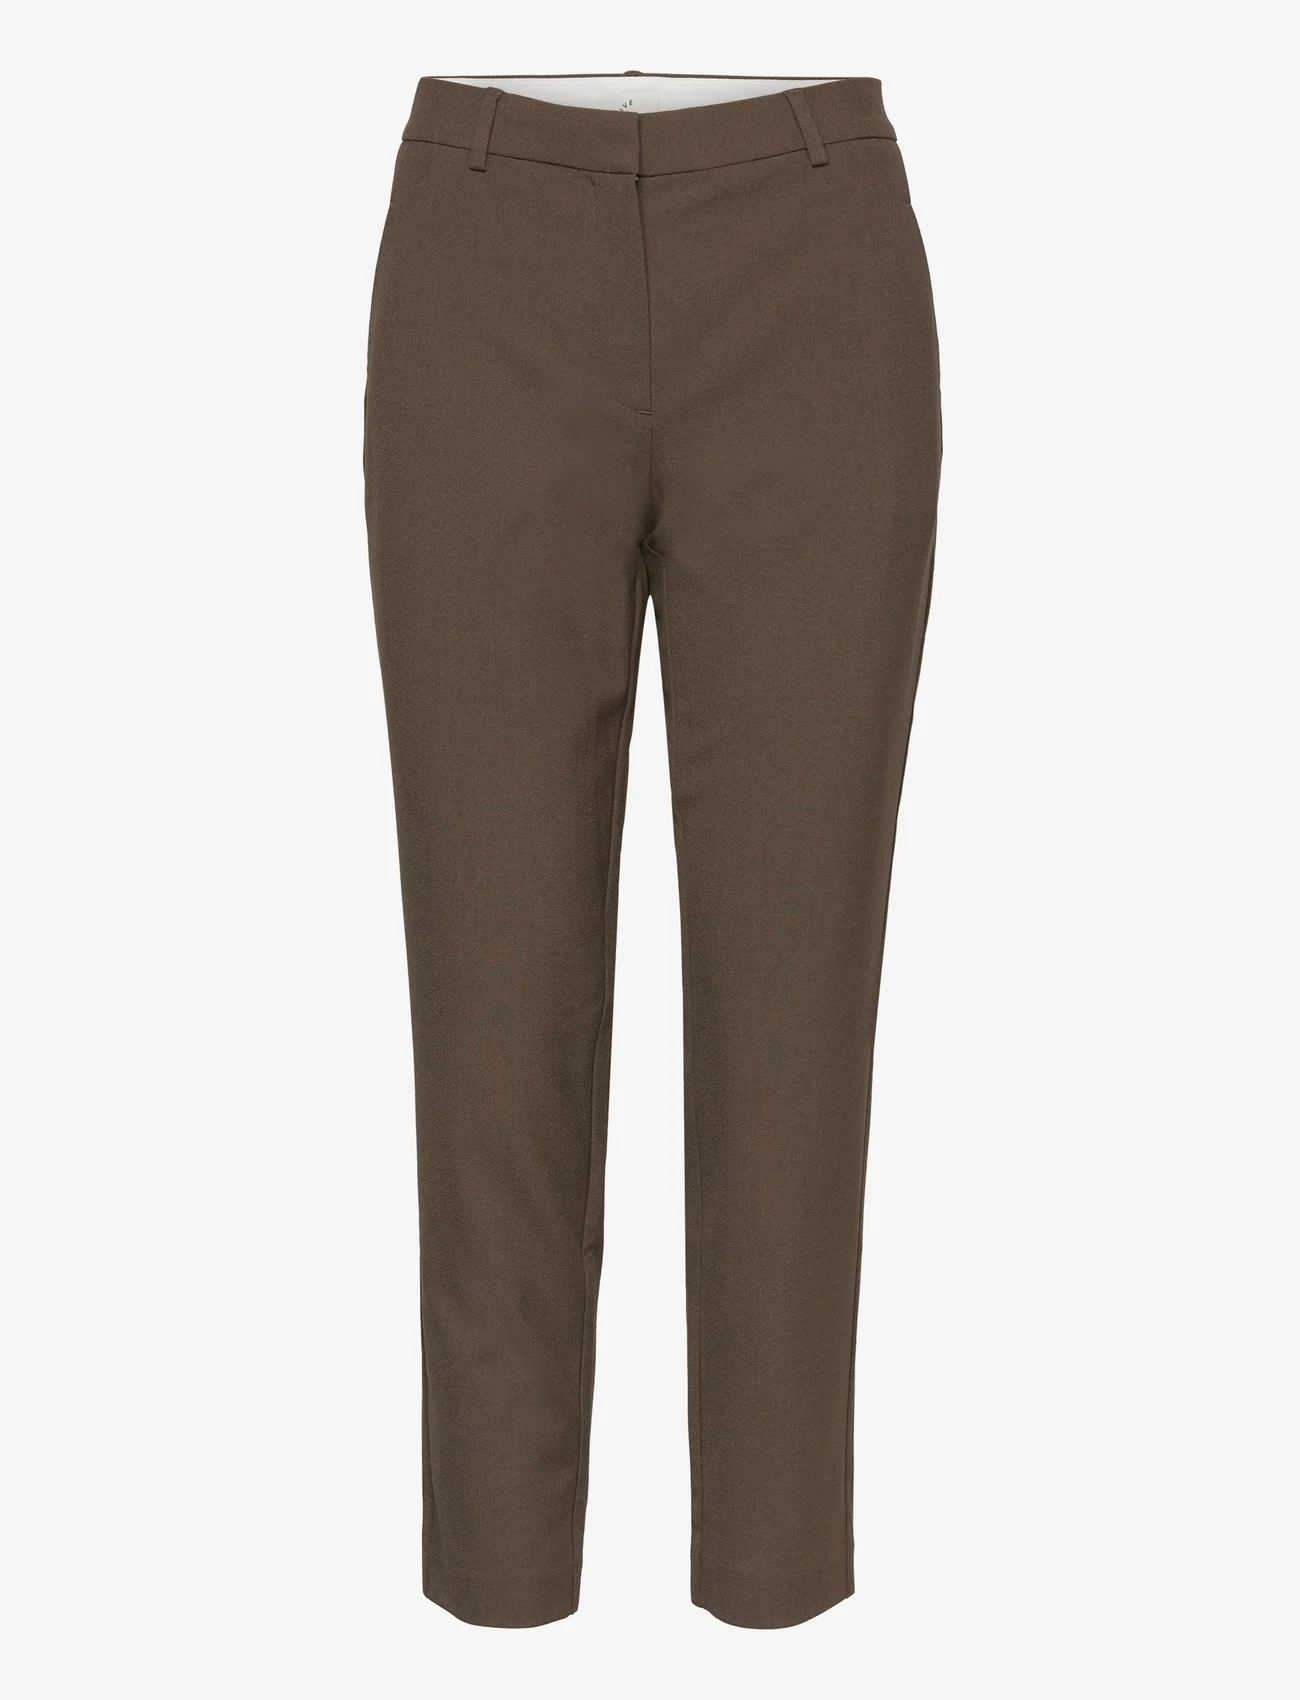 FIVEUNITS - Kylie Crop - slim fit trousers - grey brown melange - 0